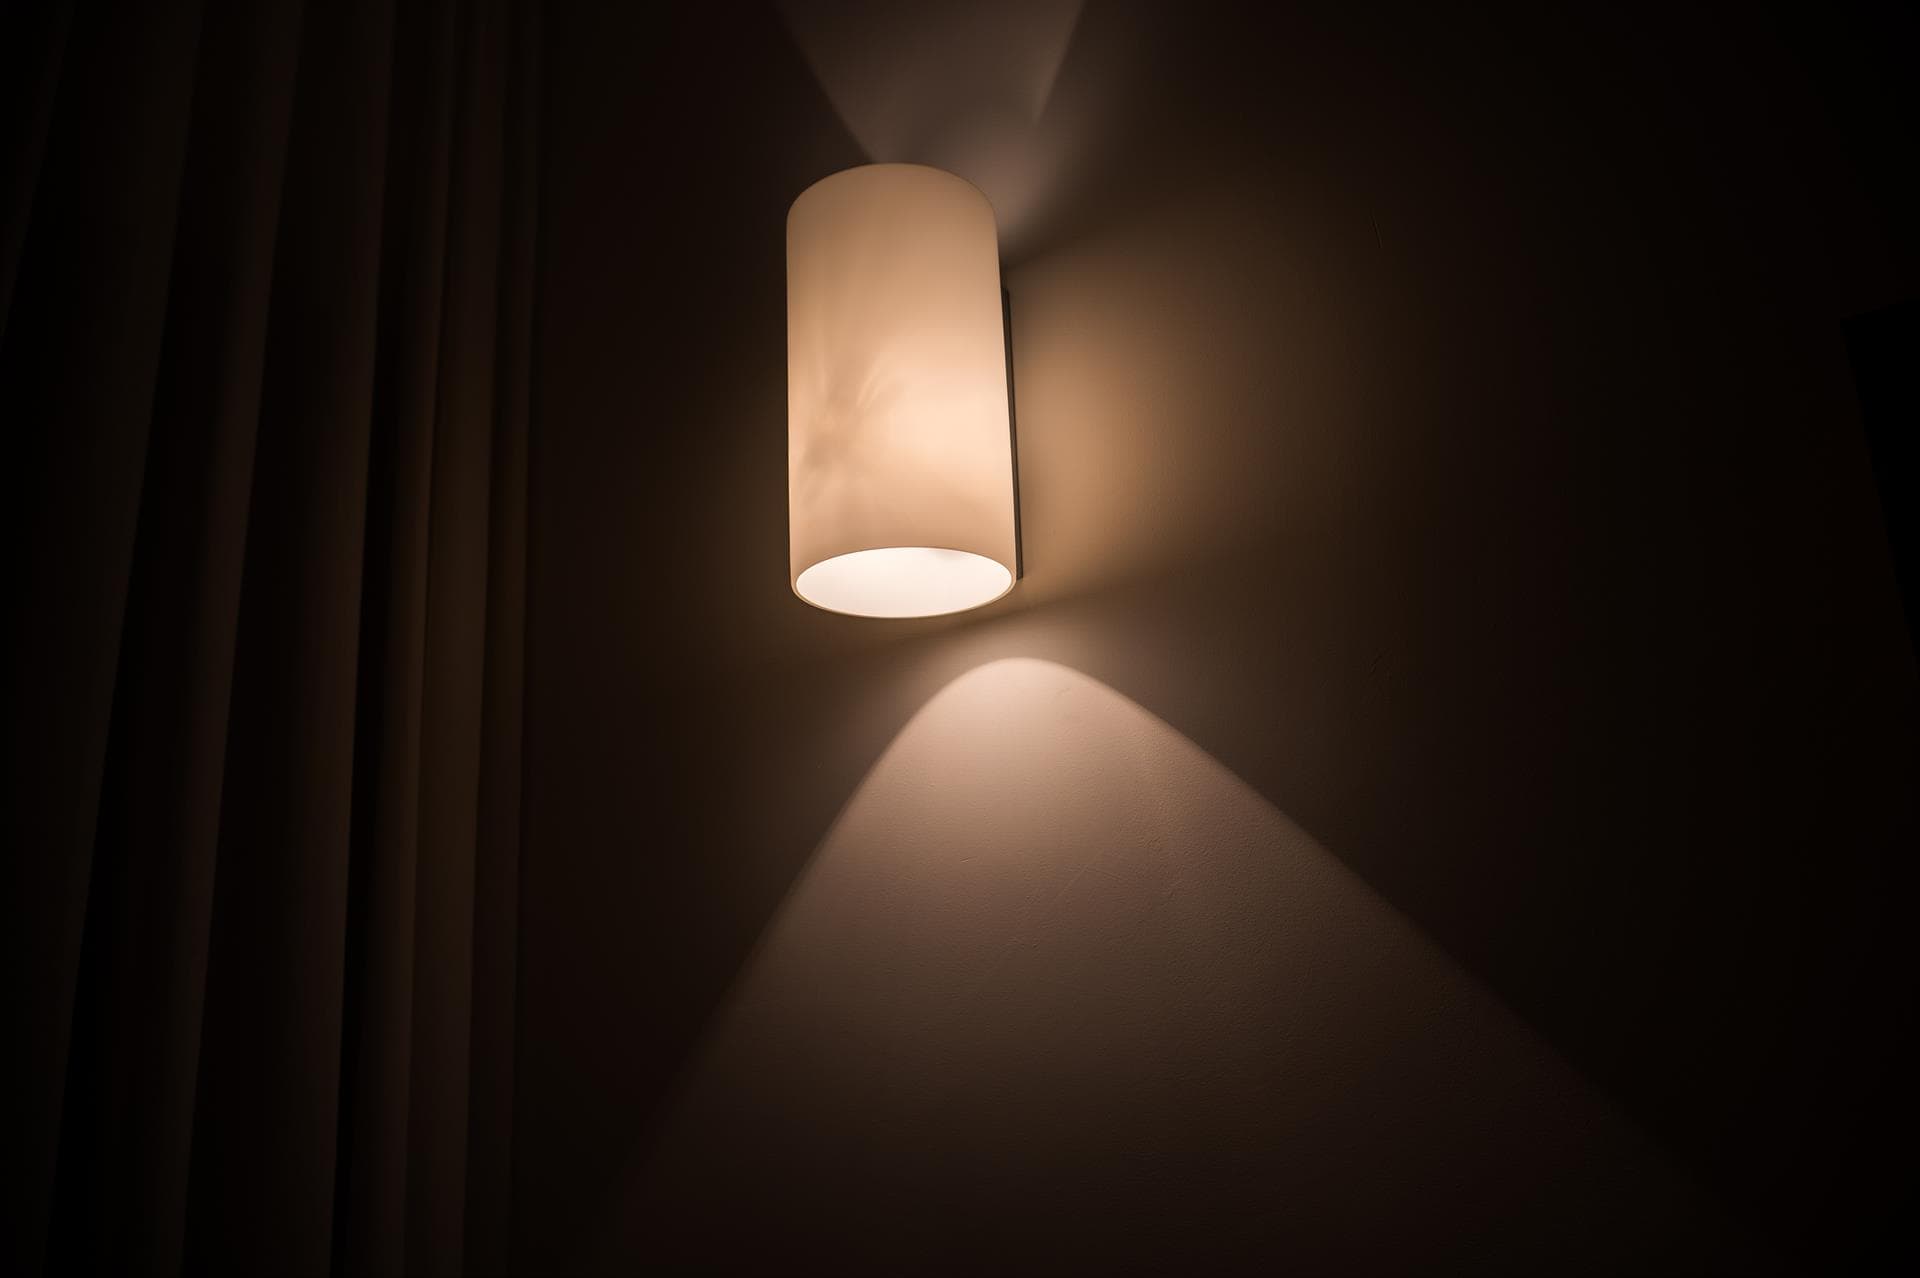   ¿Intereado en la iluminación LED? Contáctanos y estaremos encantados de ayudarte